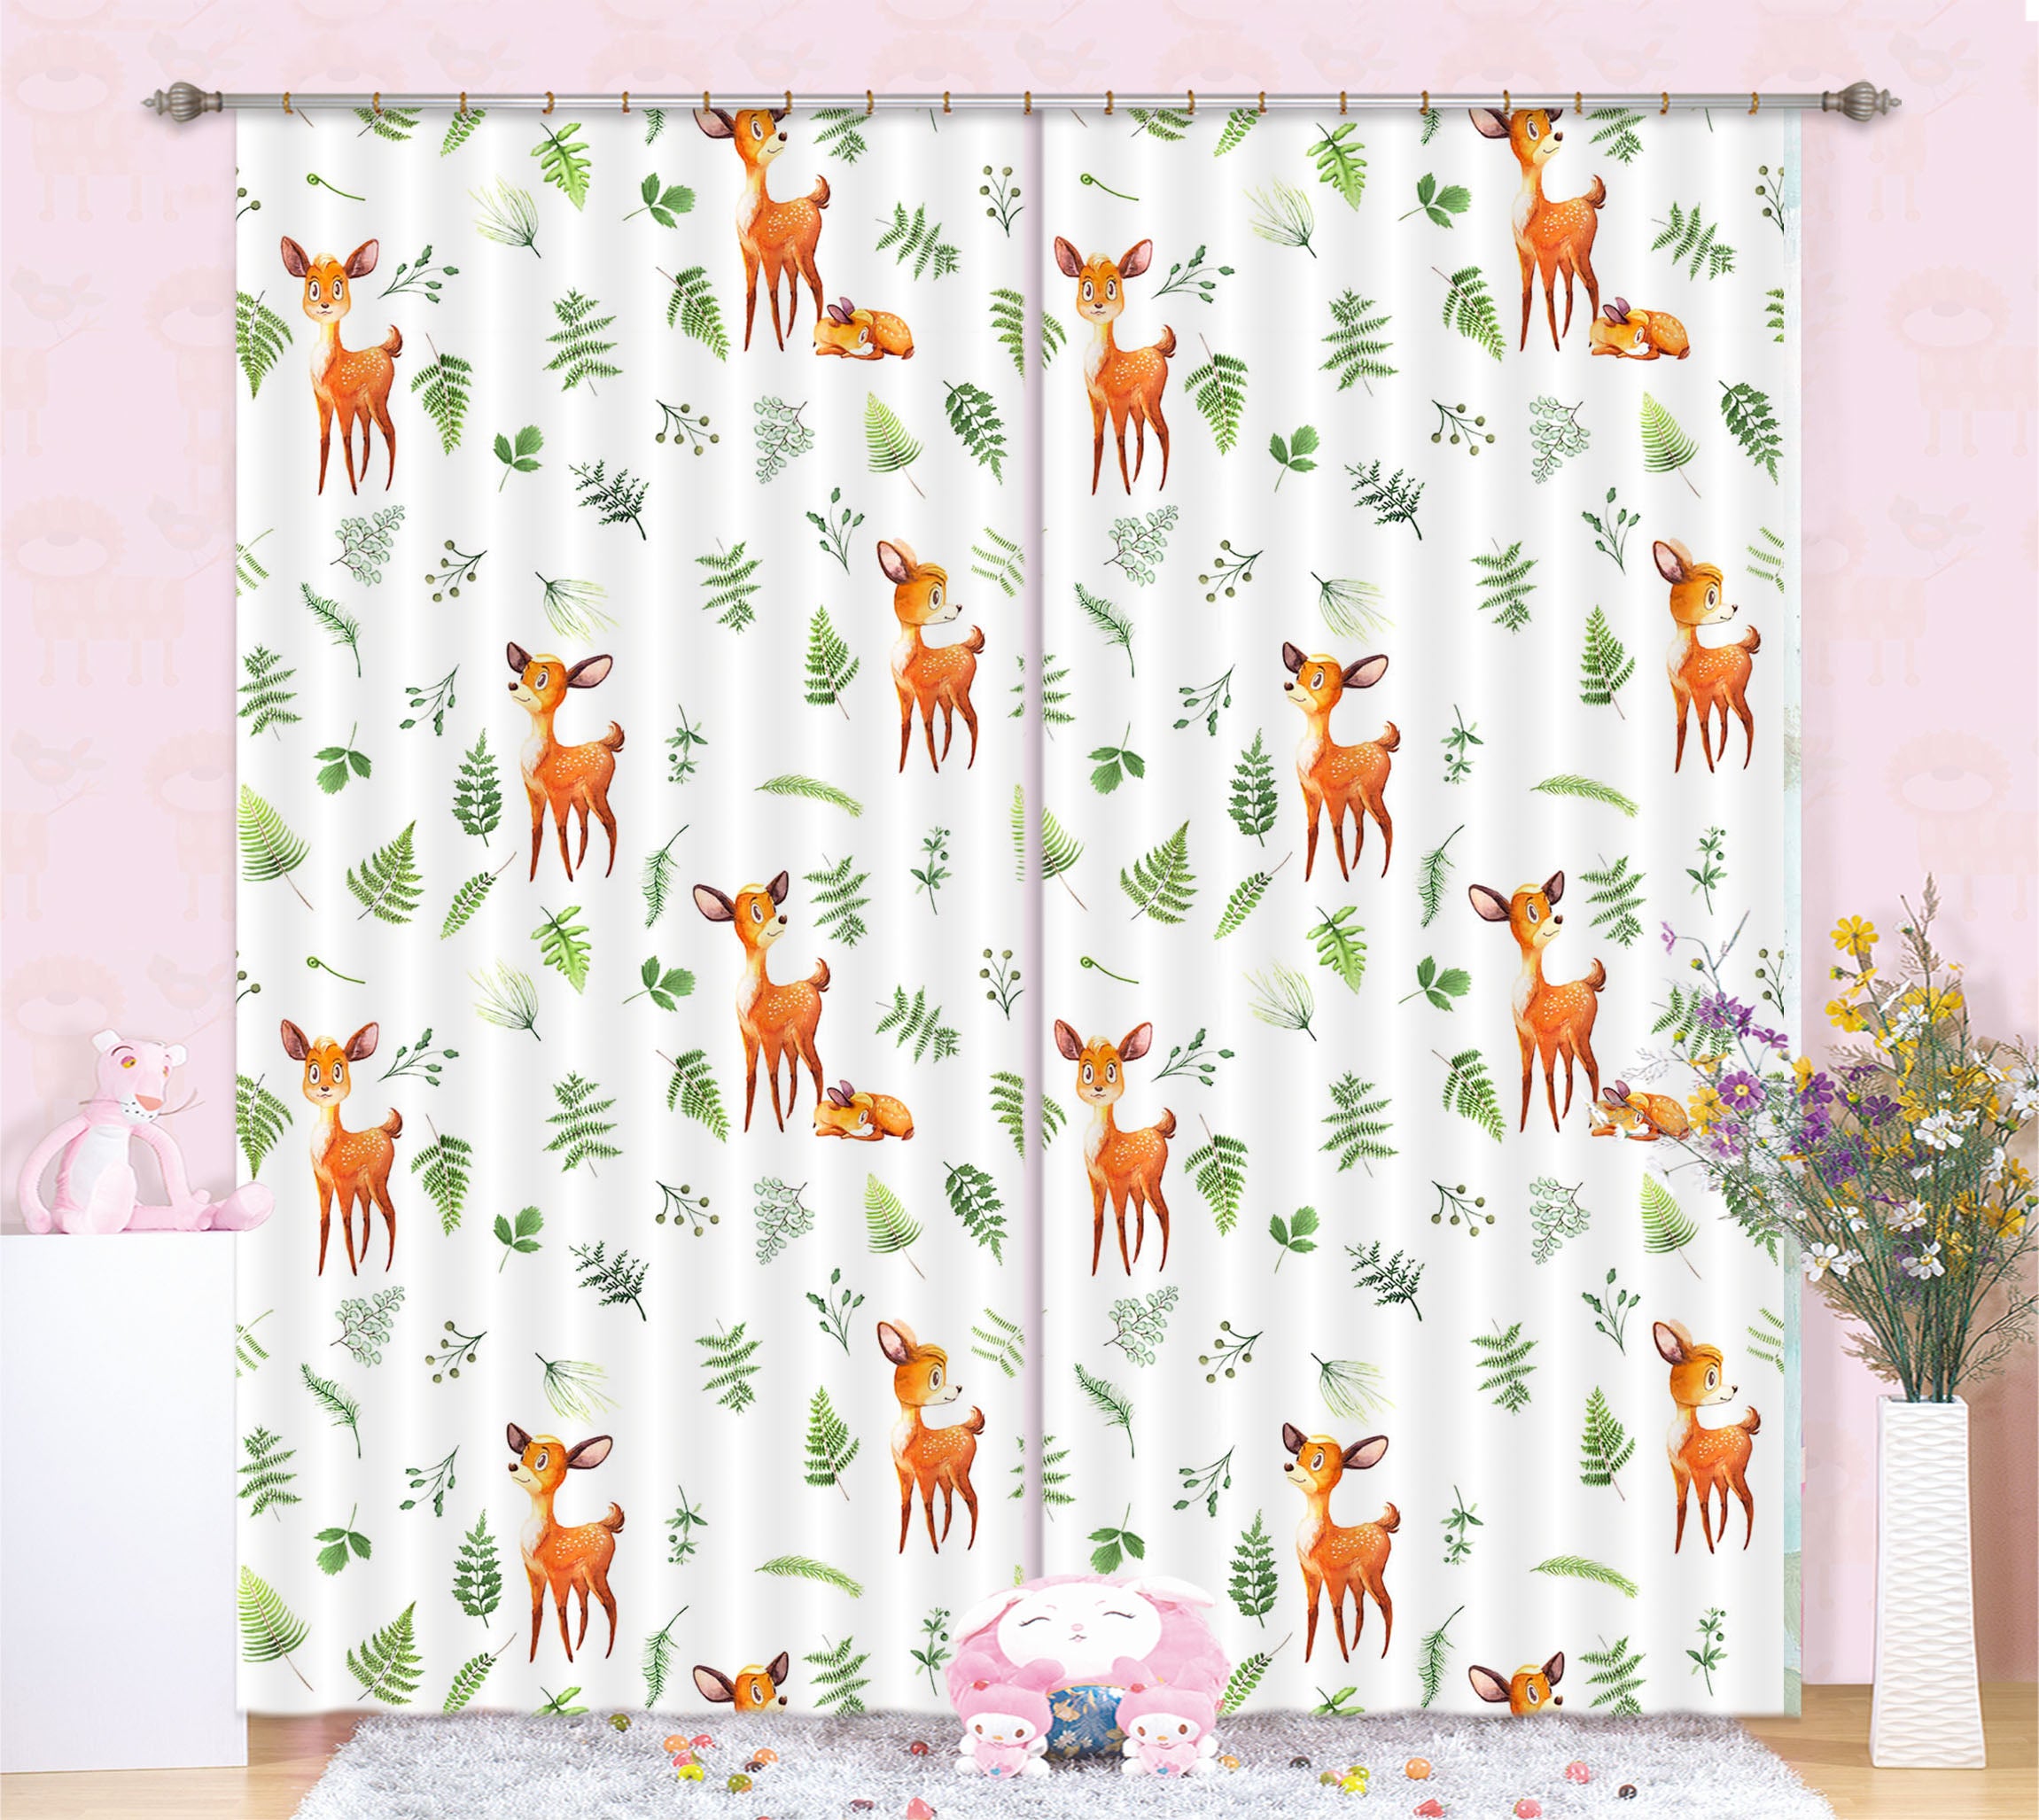 3D Deer Leaves 133 Uta Naumann Curtain Curtains Drapes